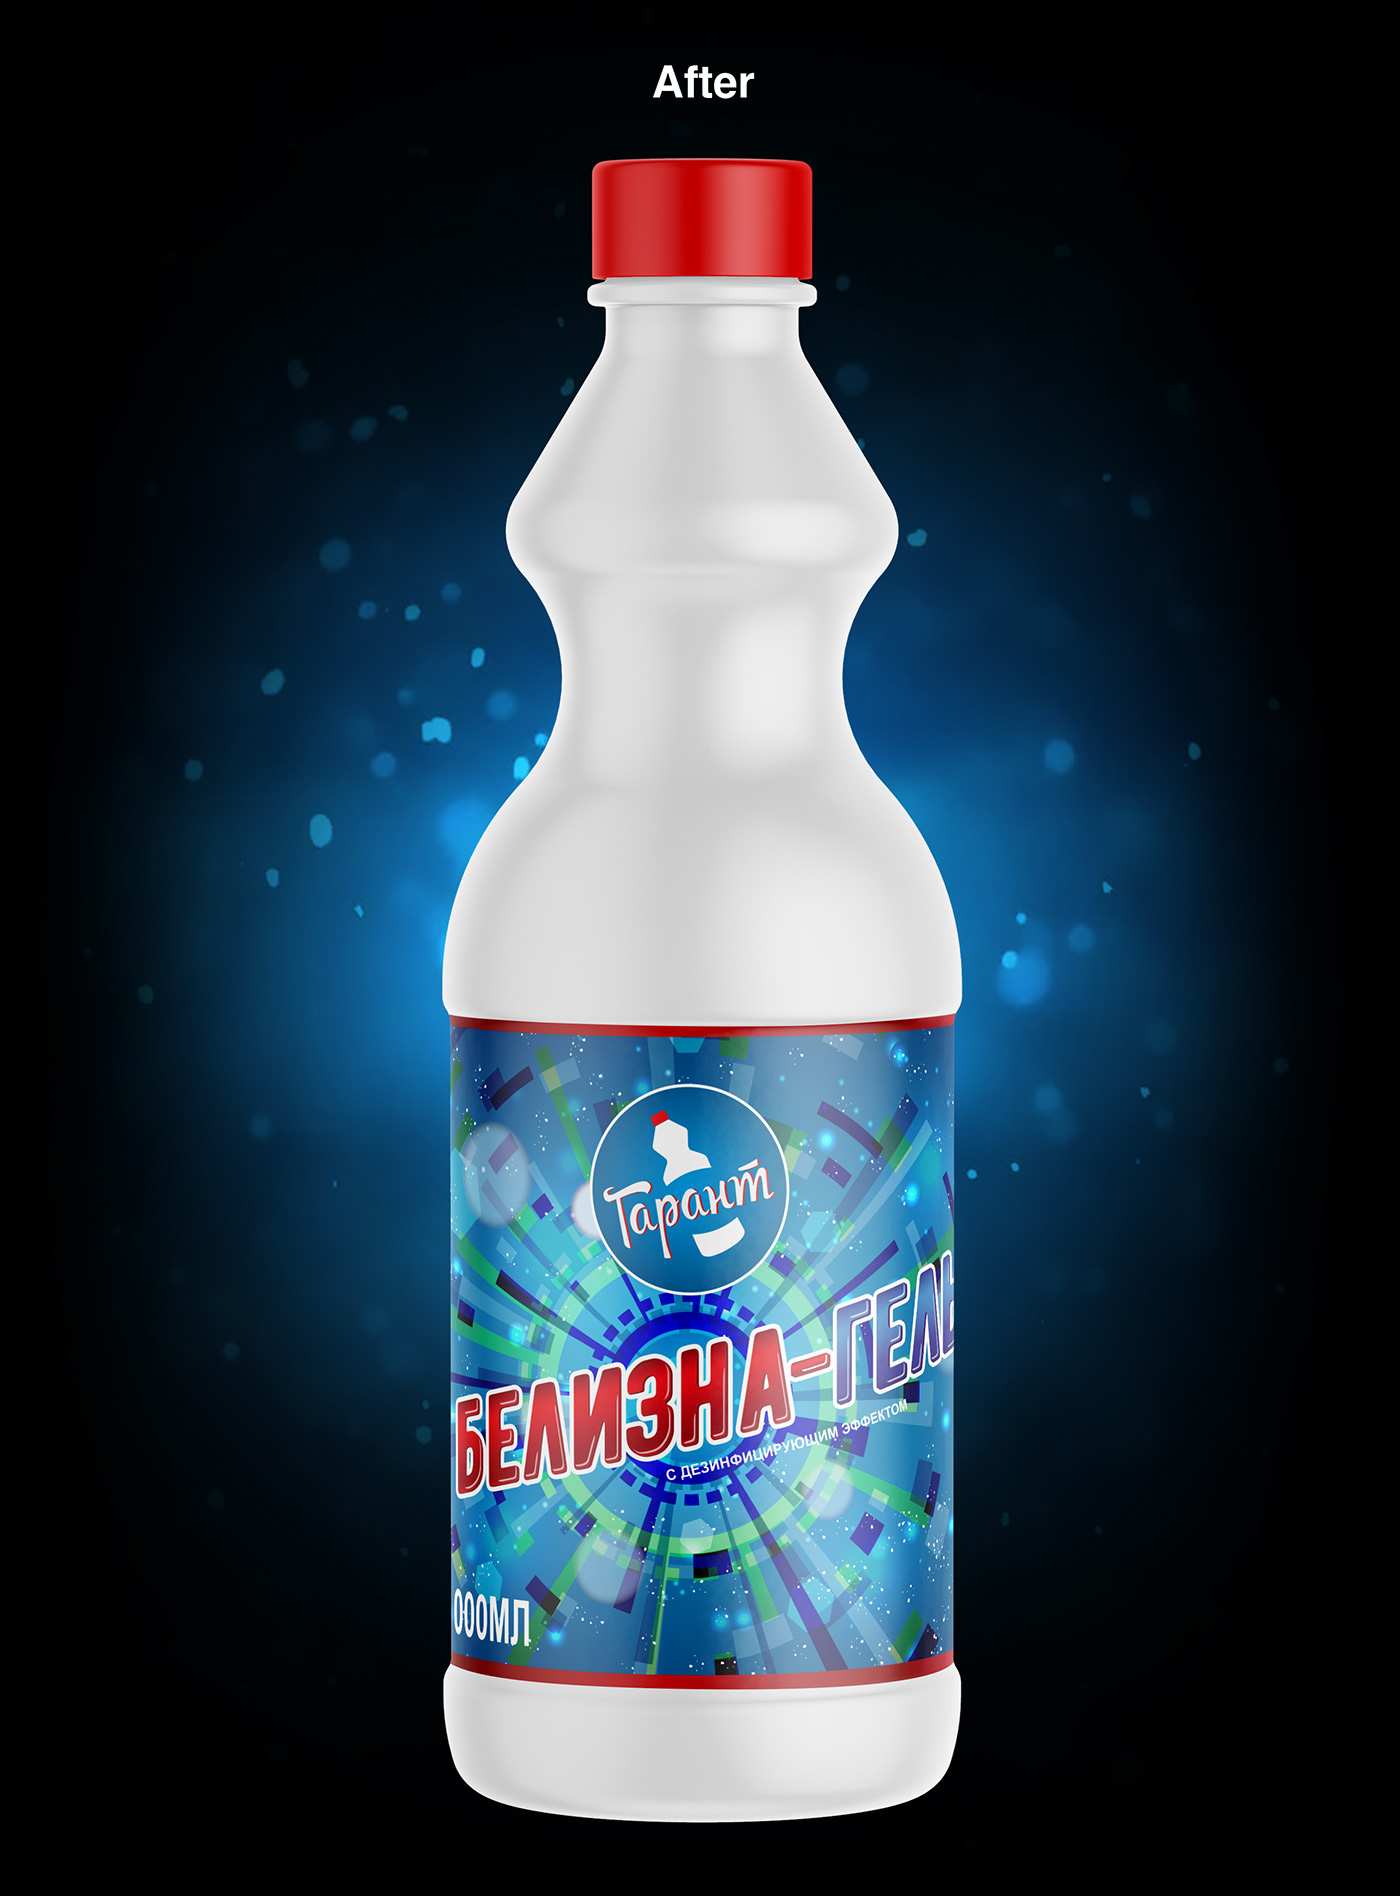 art Bleach bottle chemistry design garant gel ILLUSTRATION  Label samtakoi